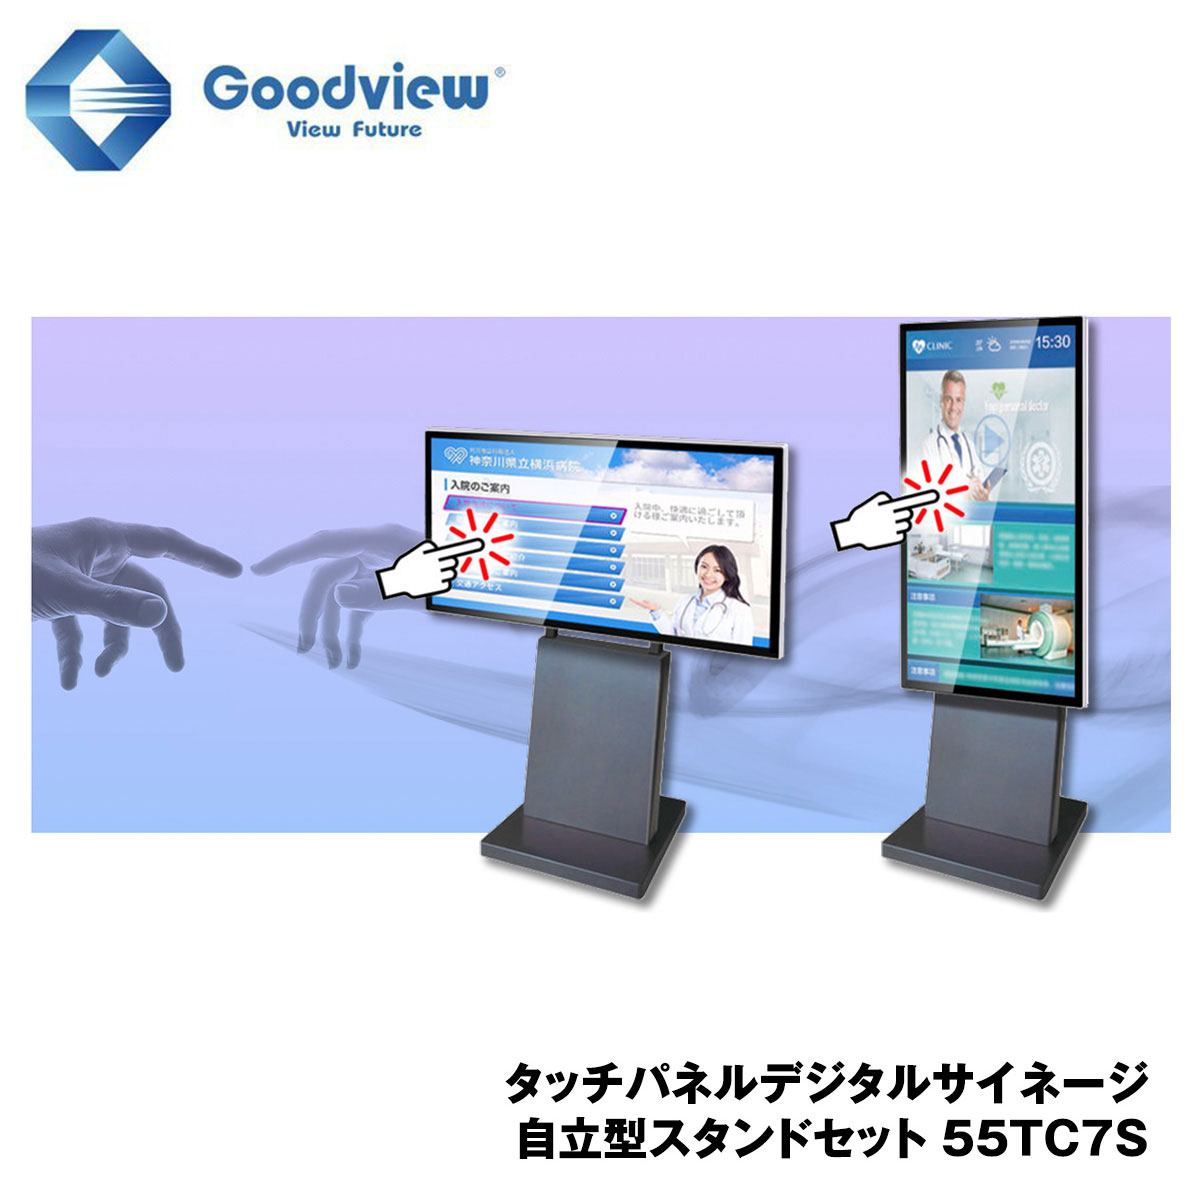 Goodview デジタルサイネージ タッチパネルサイネージ スタンドセット 450カンデラ 55型【55TC7S】